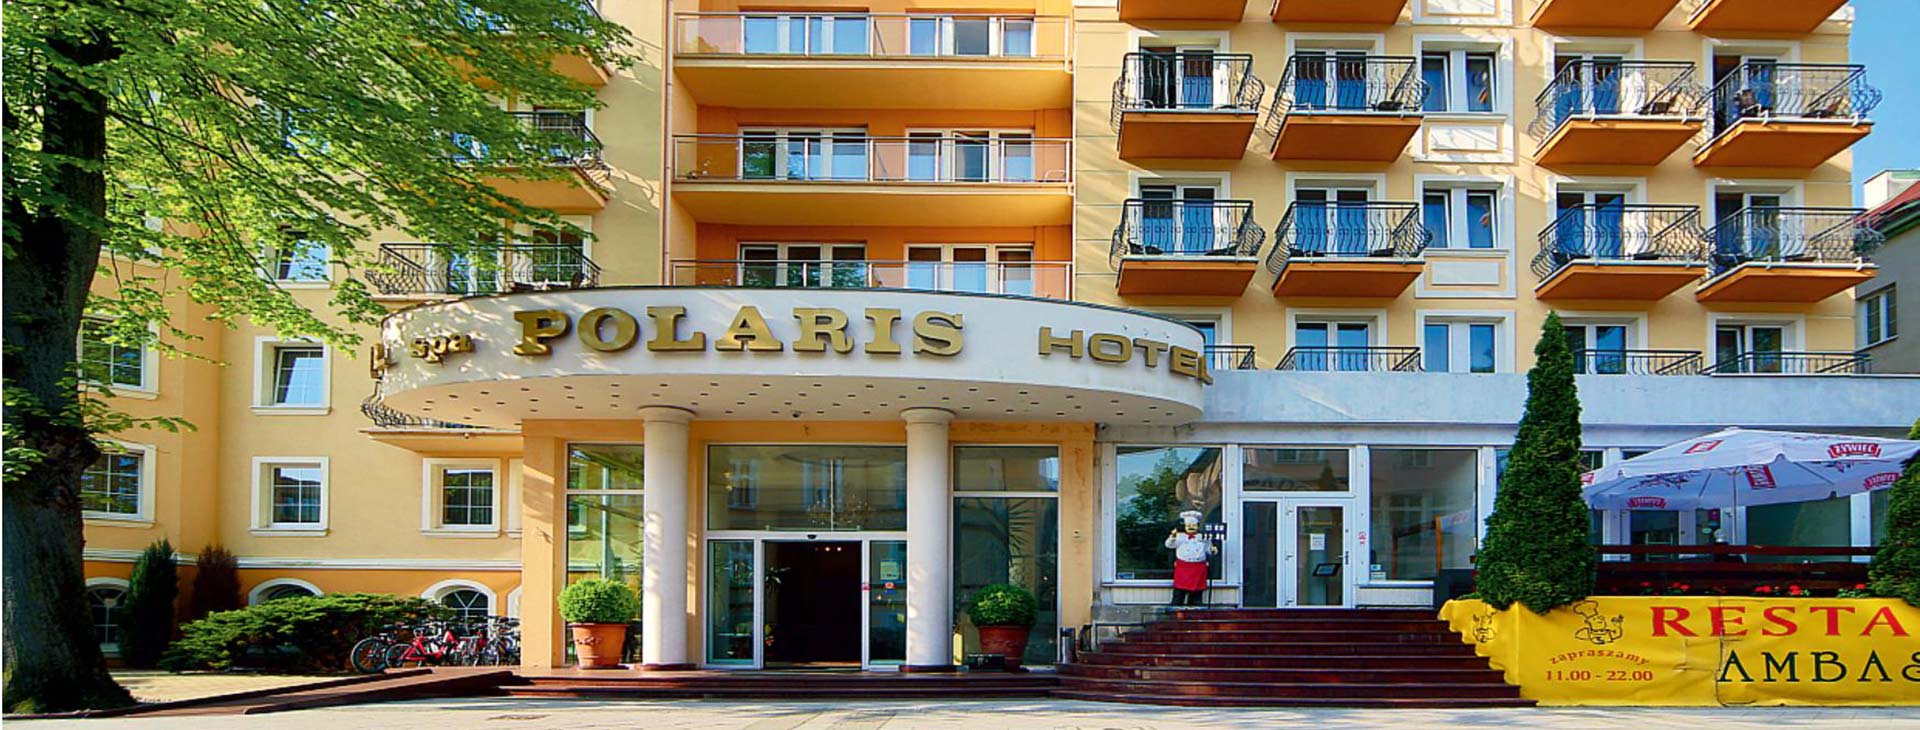 Hotel Polaris Obrázek0